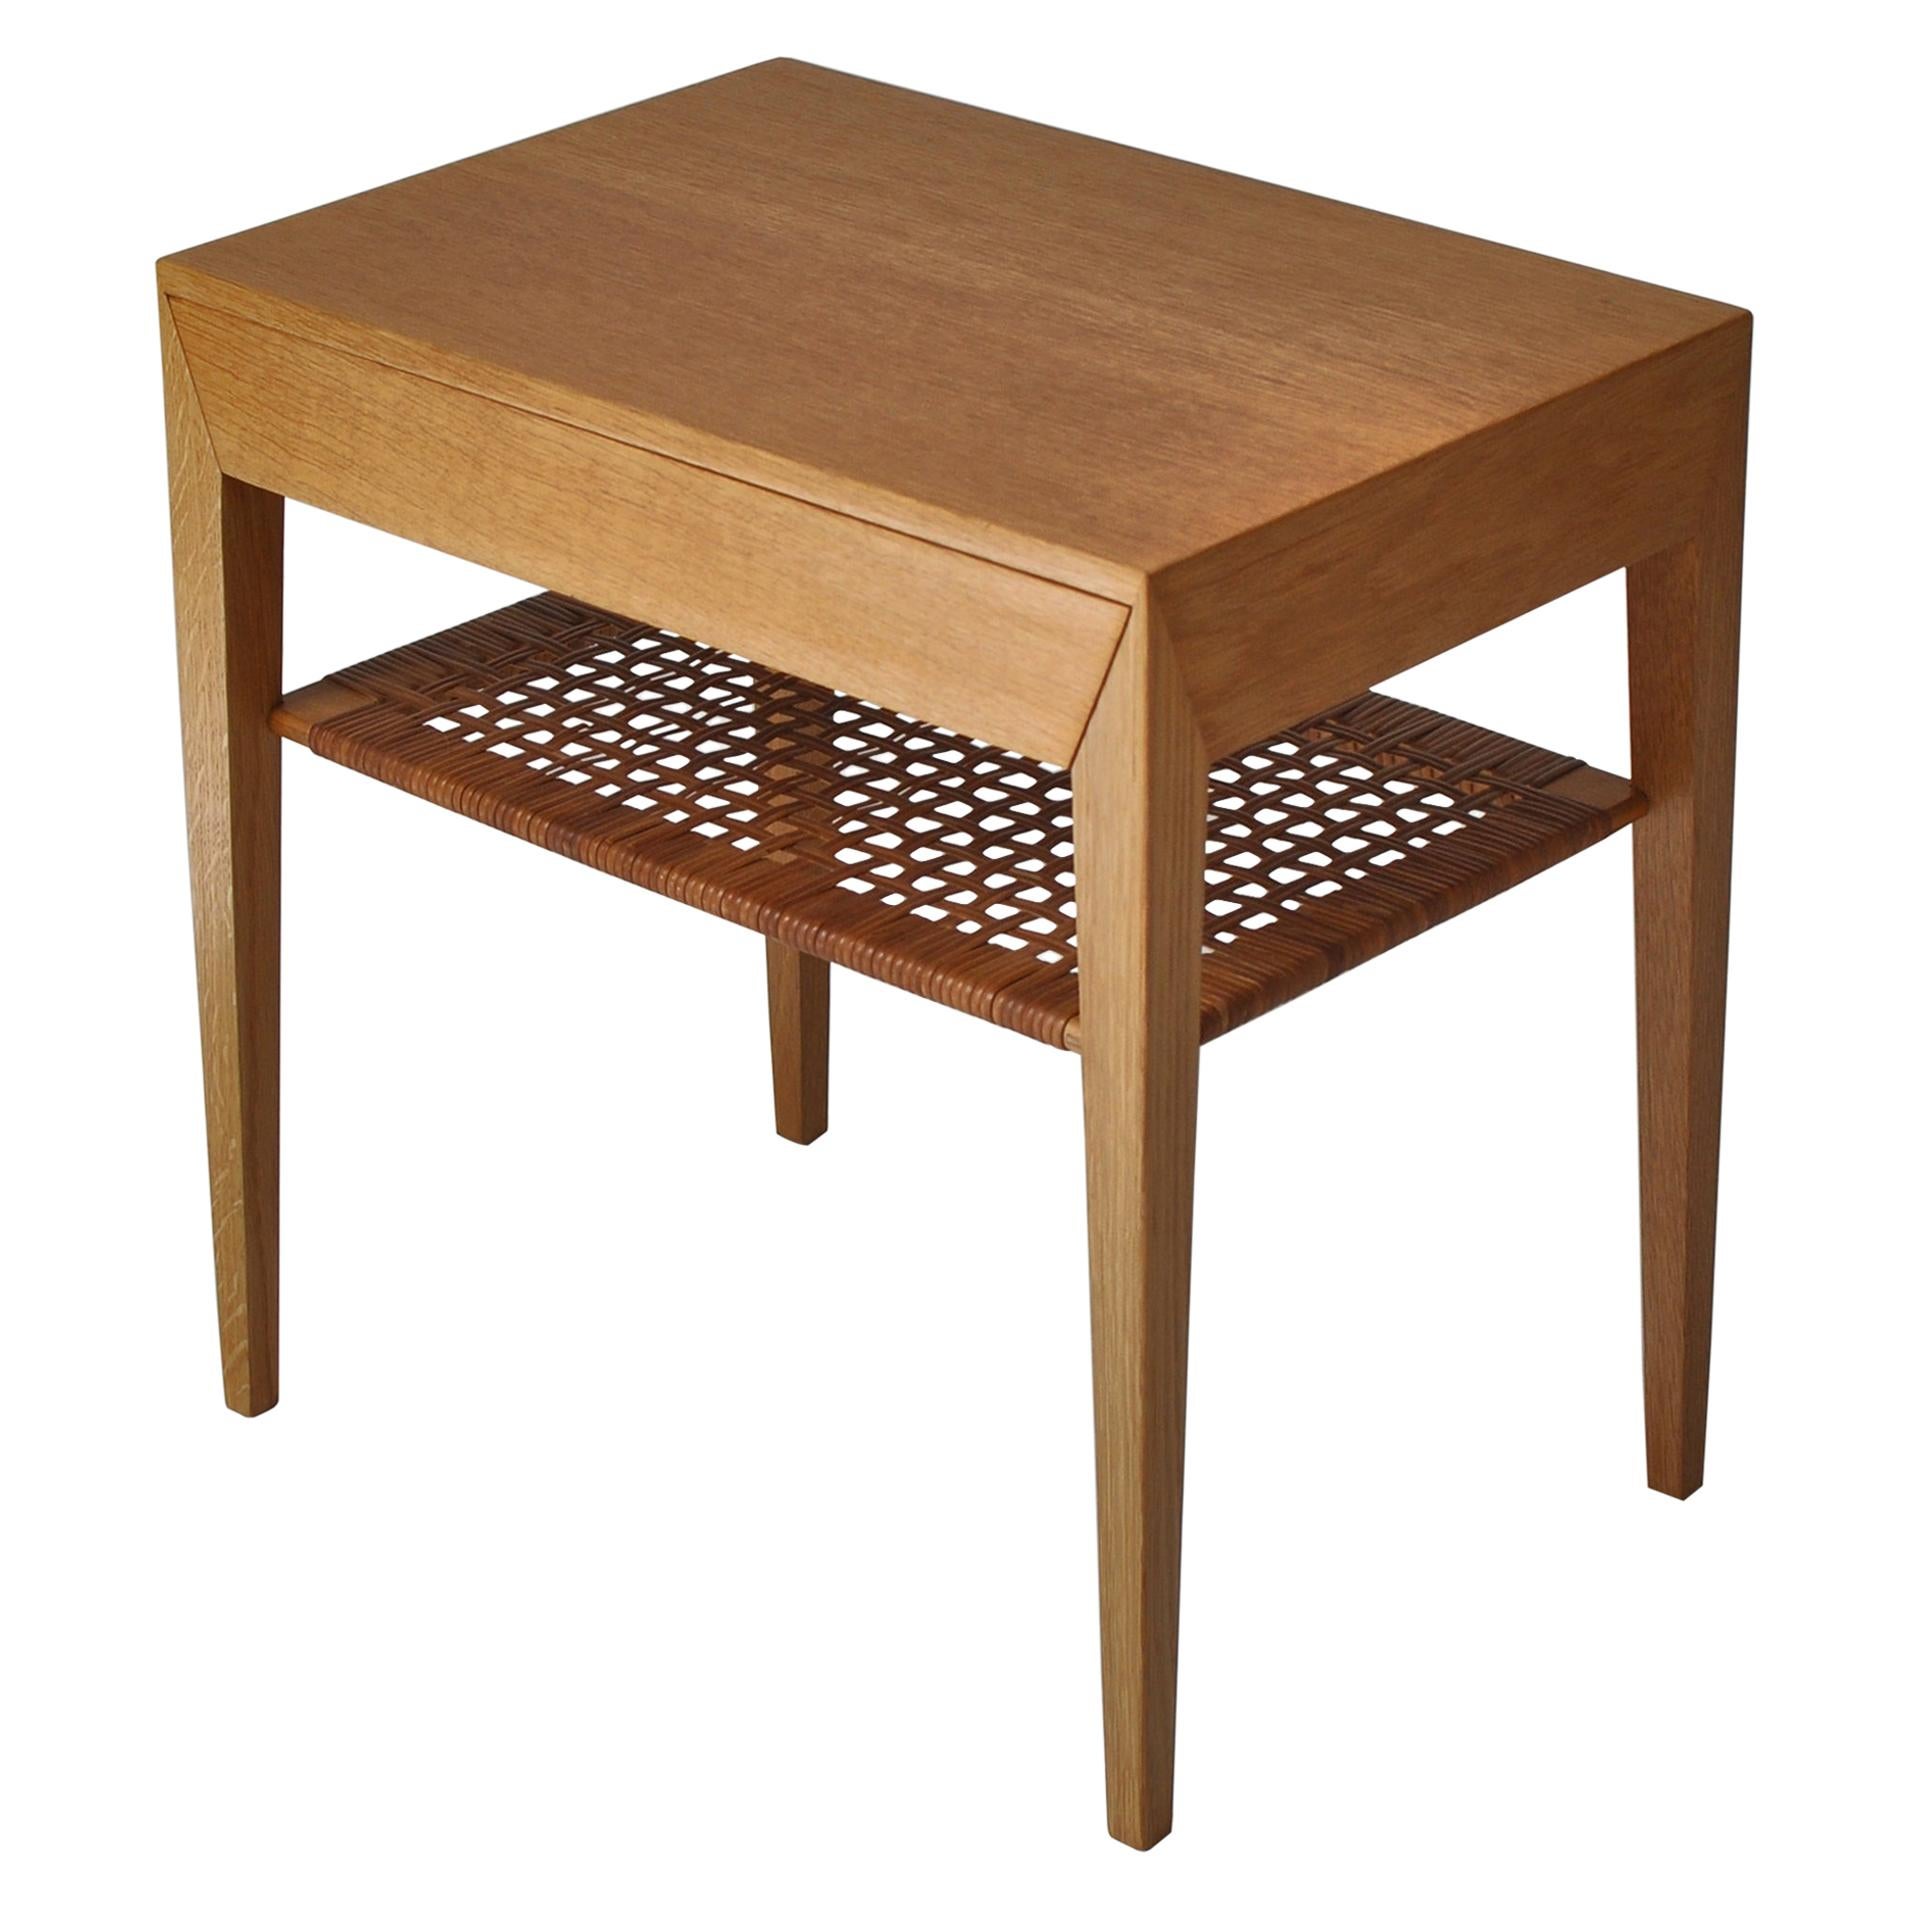 Danish Modern Oak Side Table with Shelf in Rattan Cane by Severin Hansen, 1950s